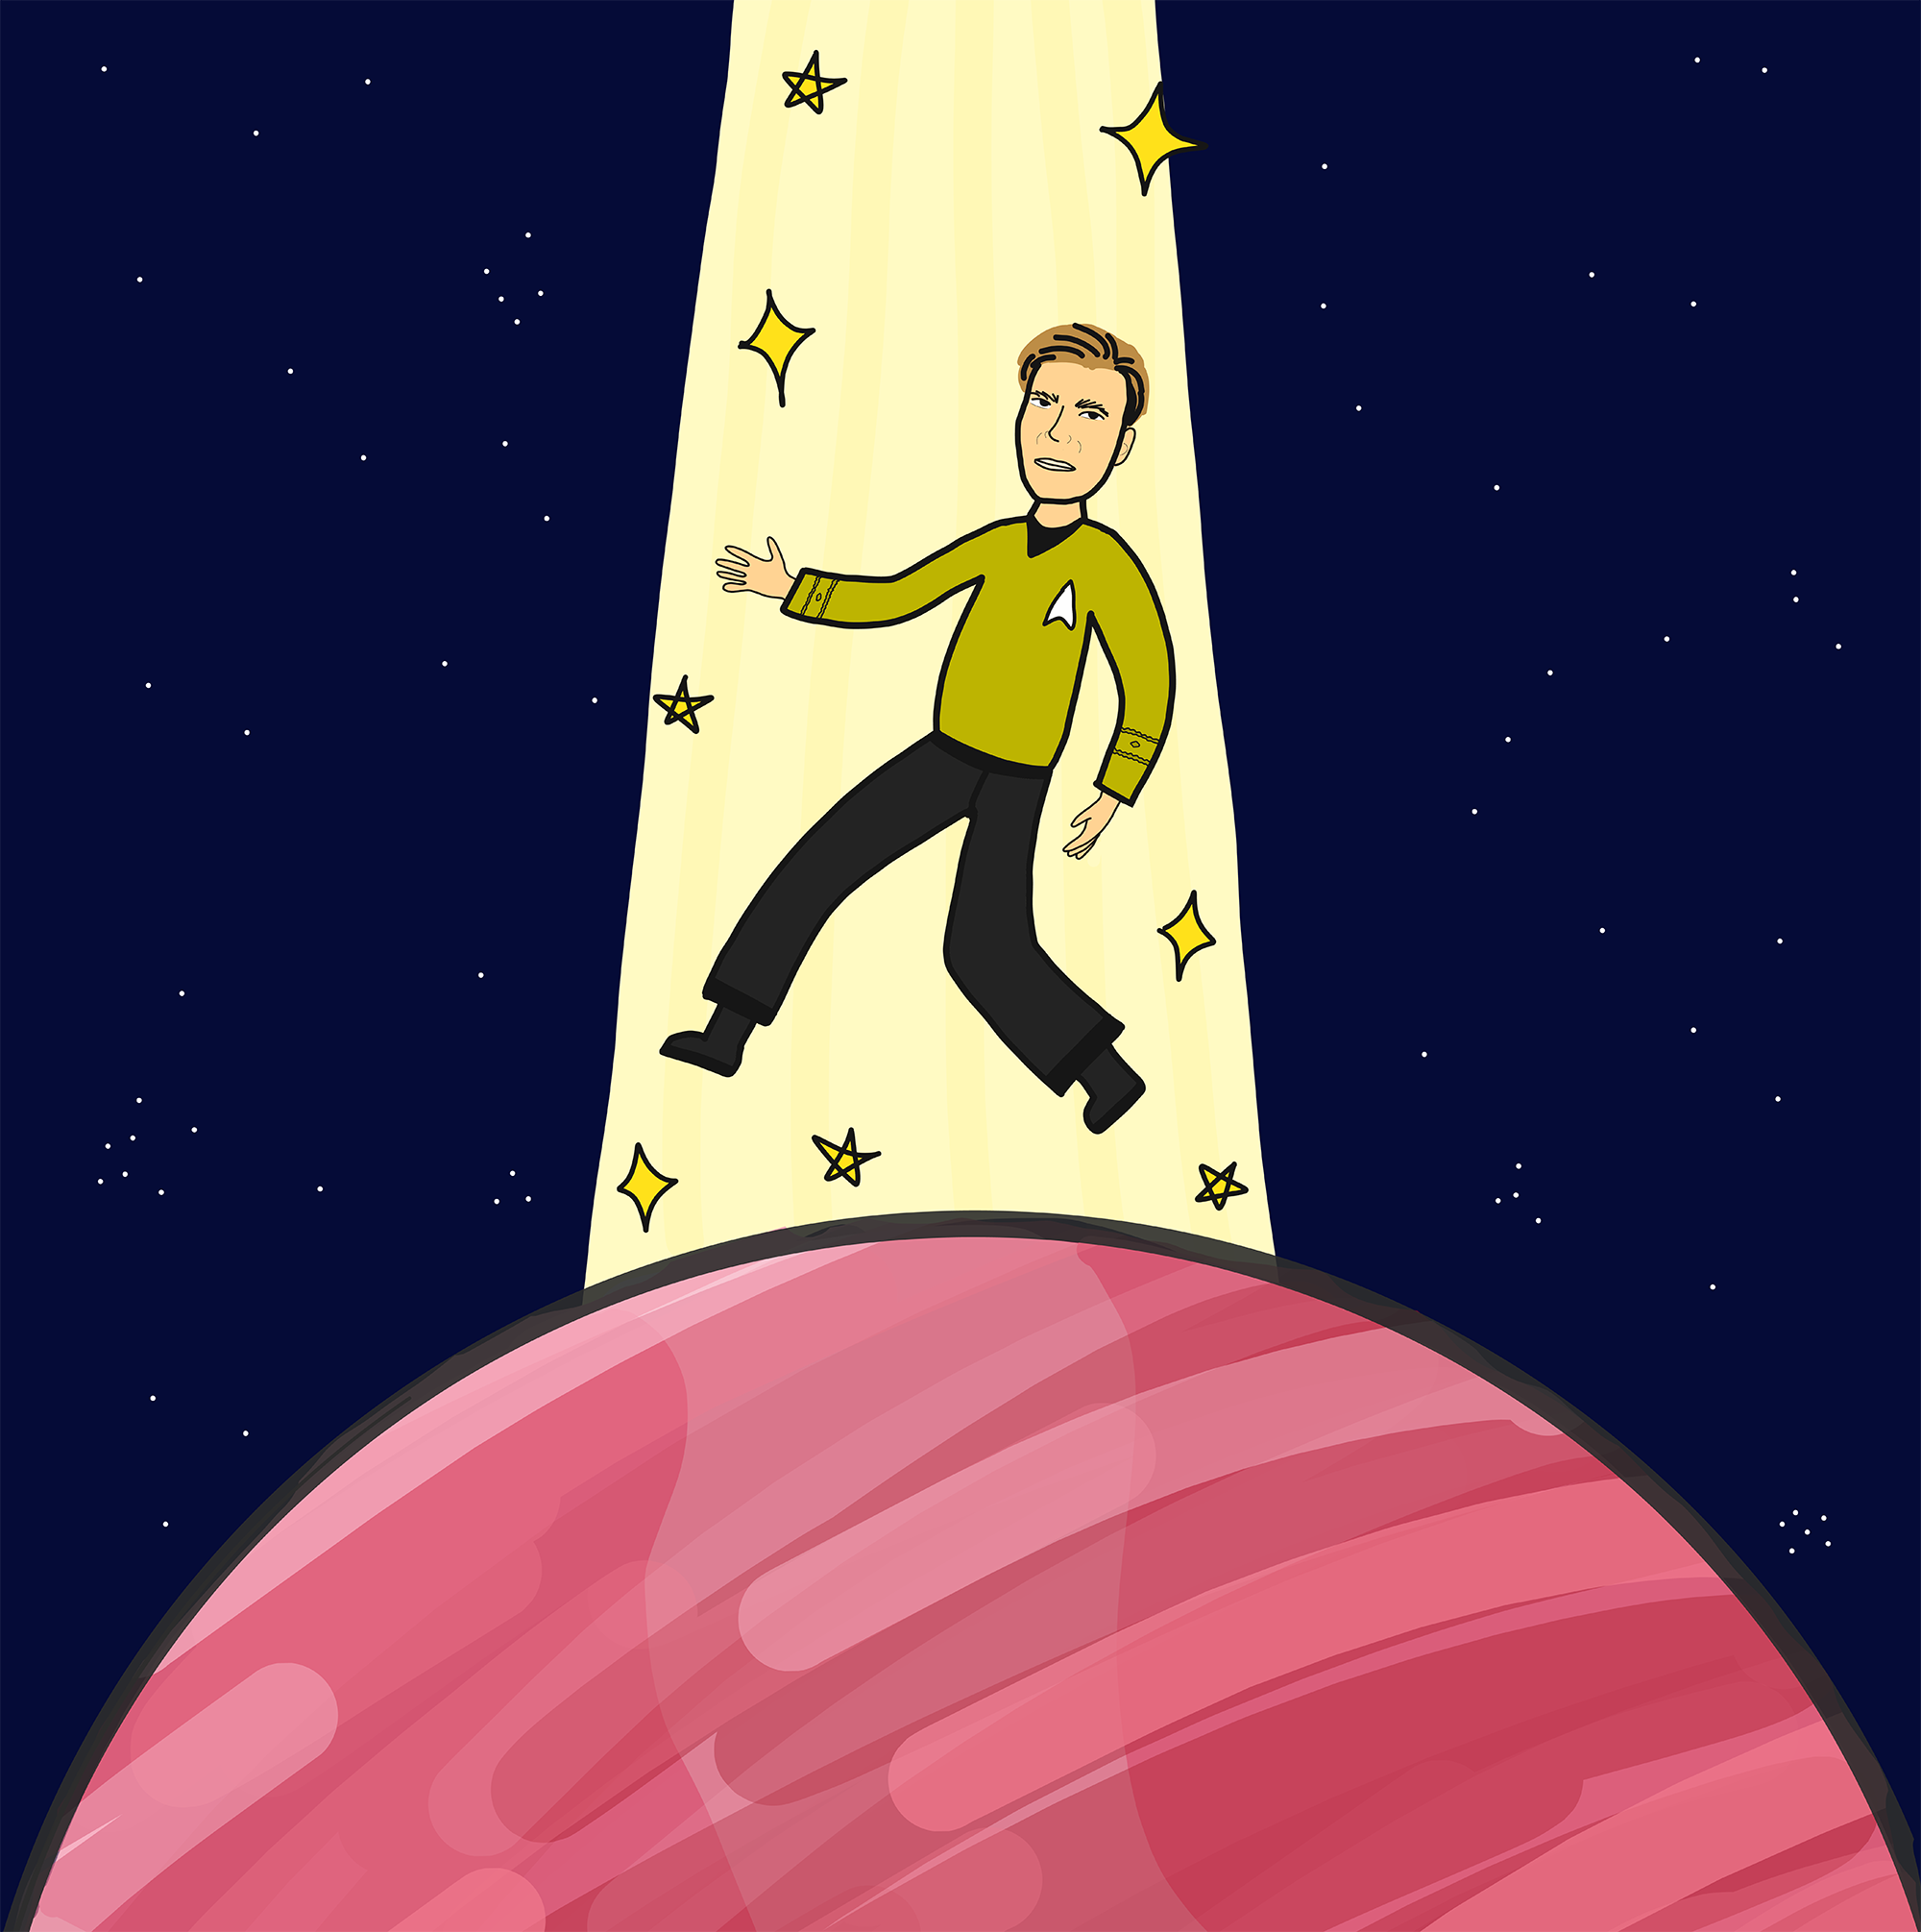 Kirk from Star Trek